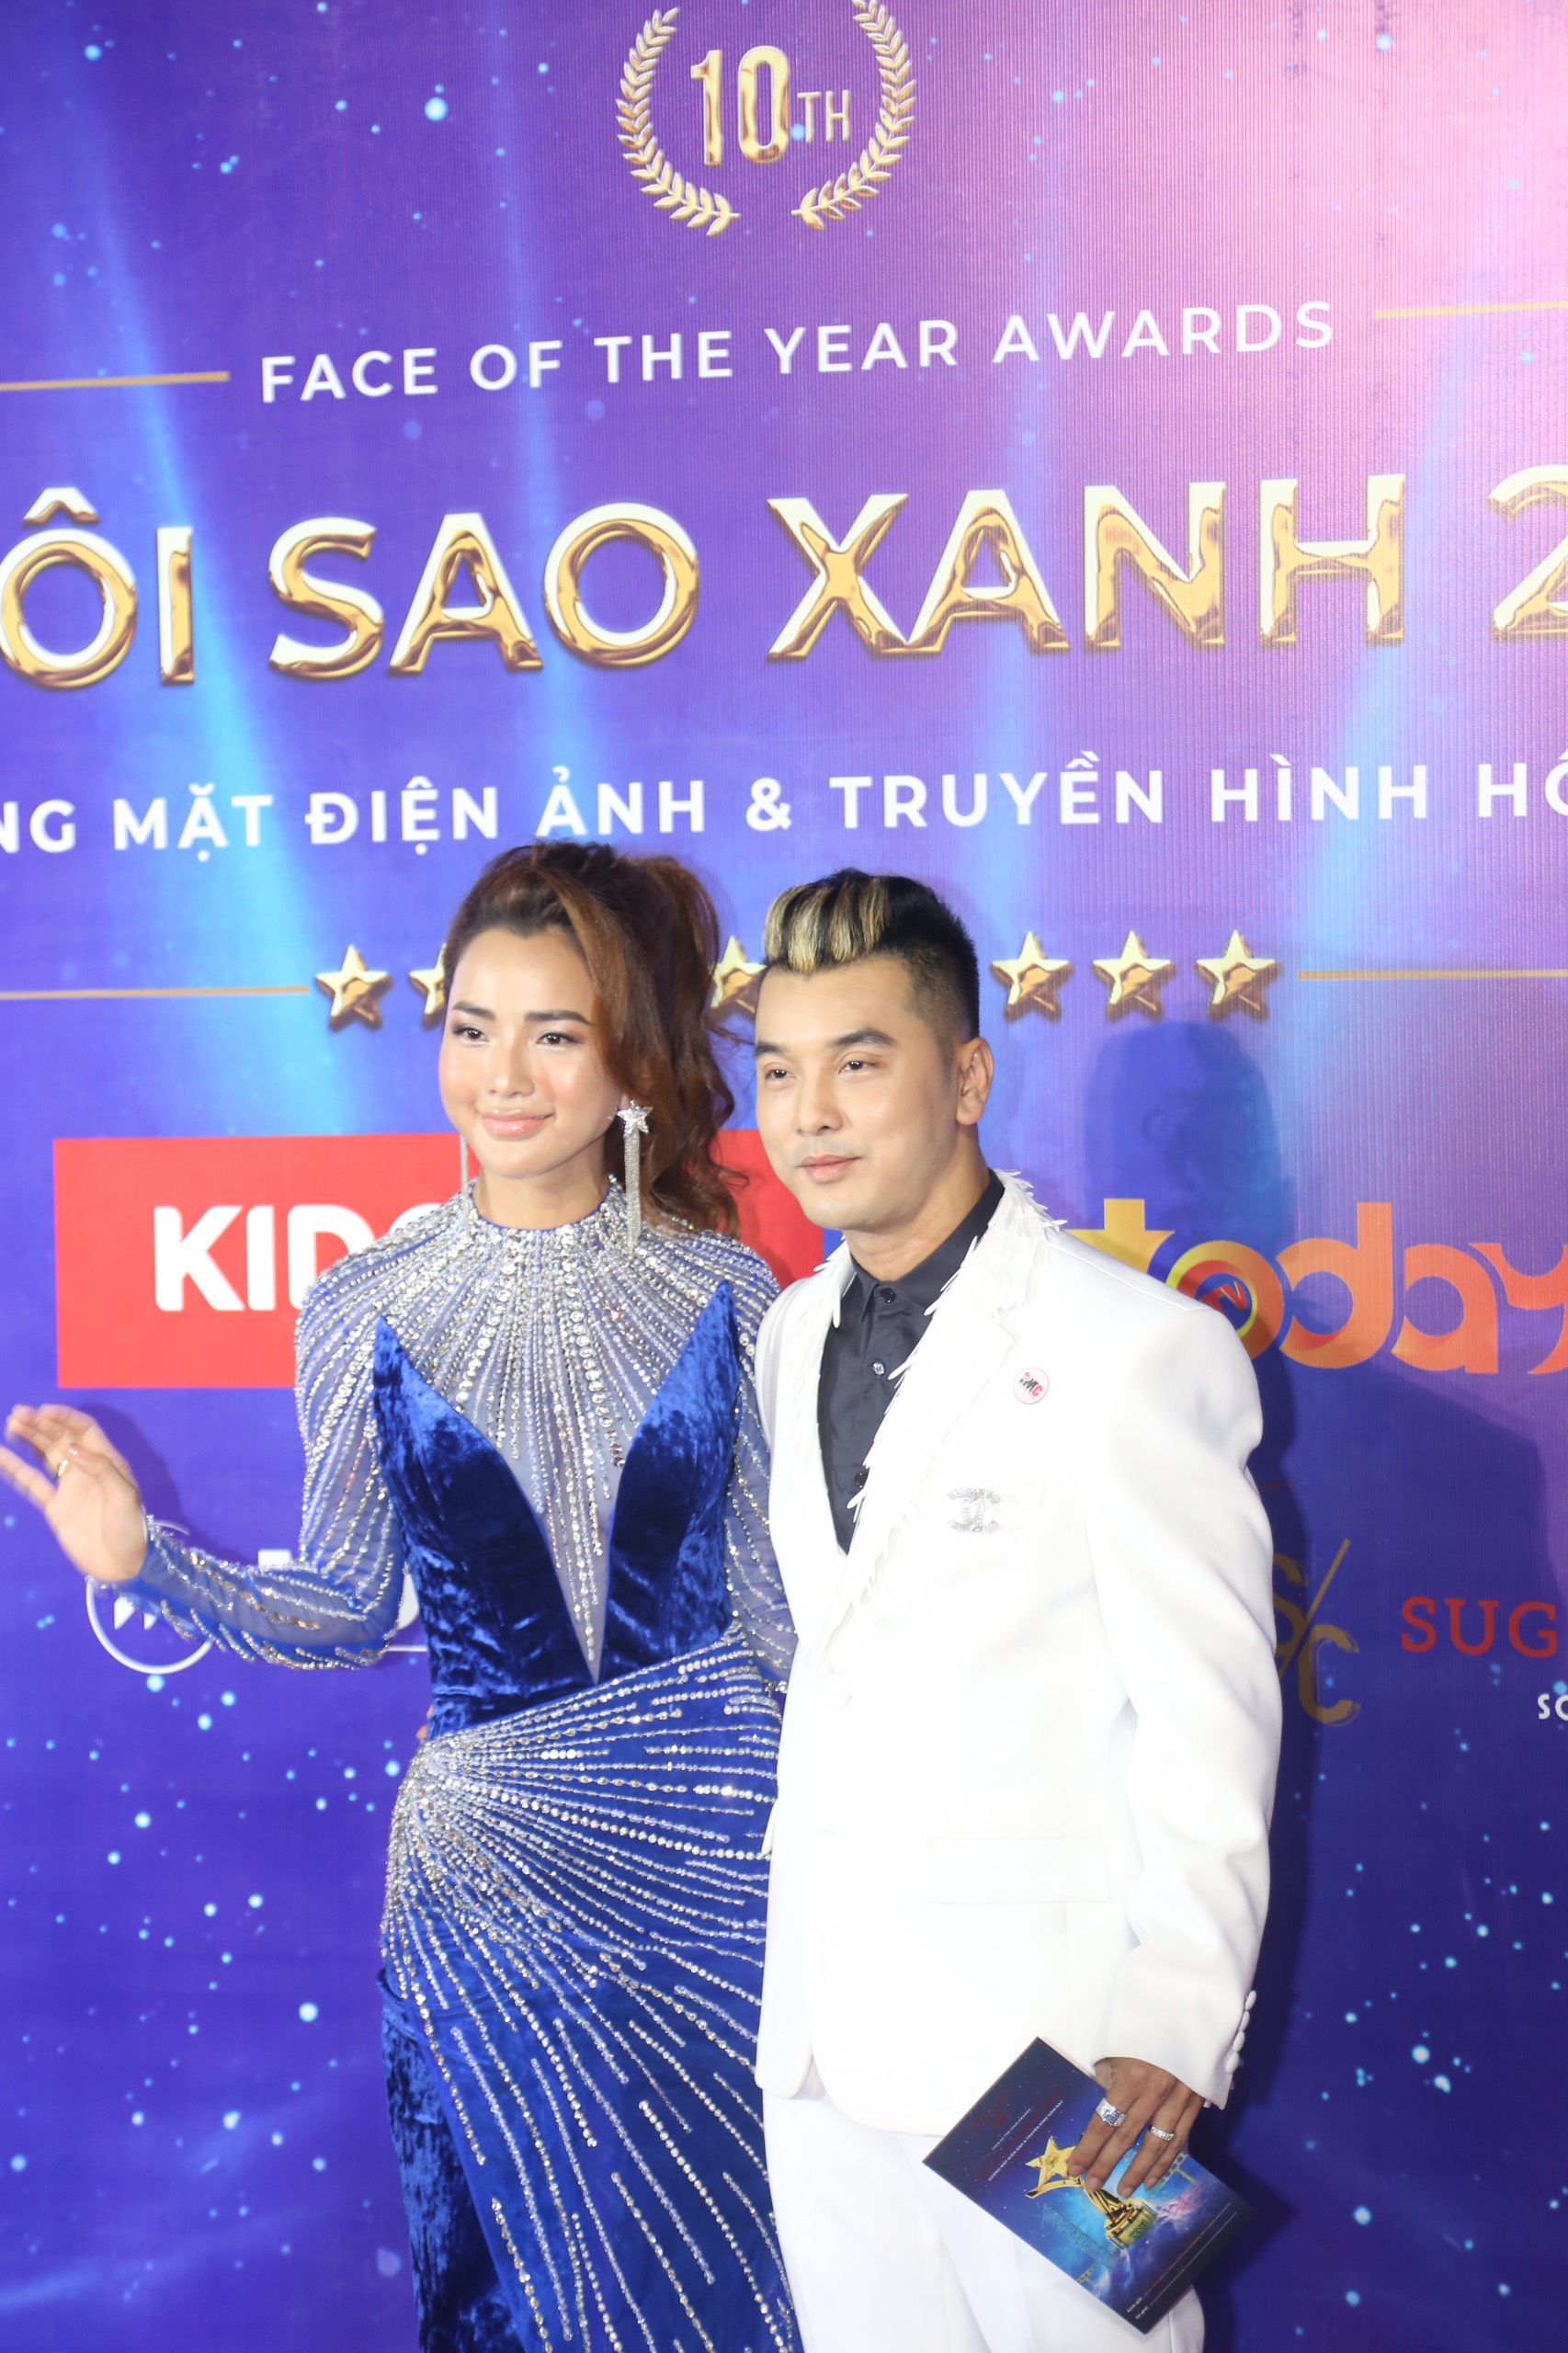 DJ Mie khoe nhan sắc như Hoa hậu, vợ một nam ca sĩ nổi tiếng lộ gương mặt khác lạ trên thảm đỏ - ảnh 6